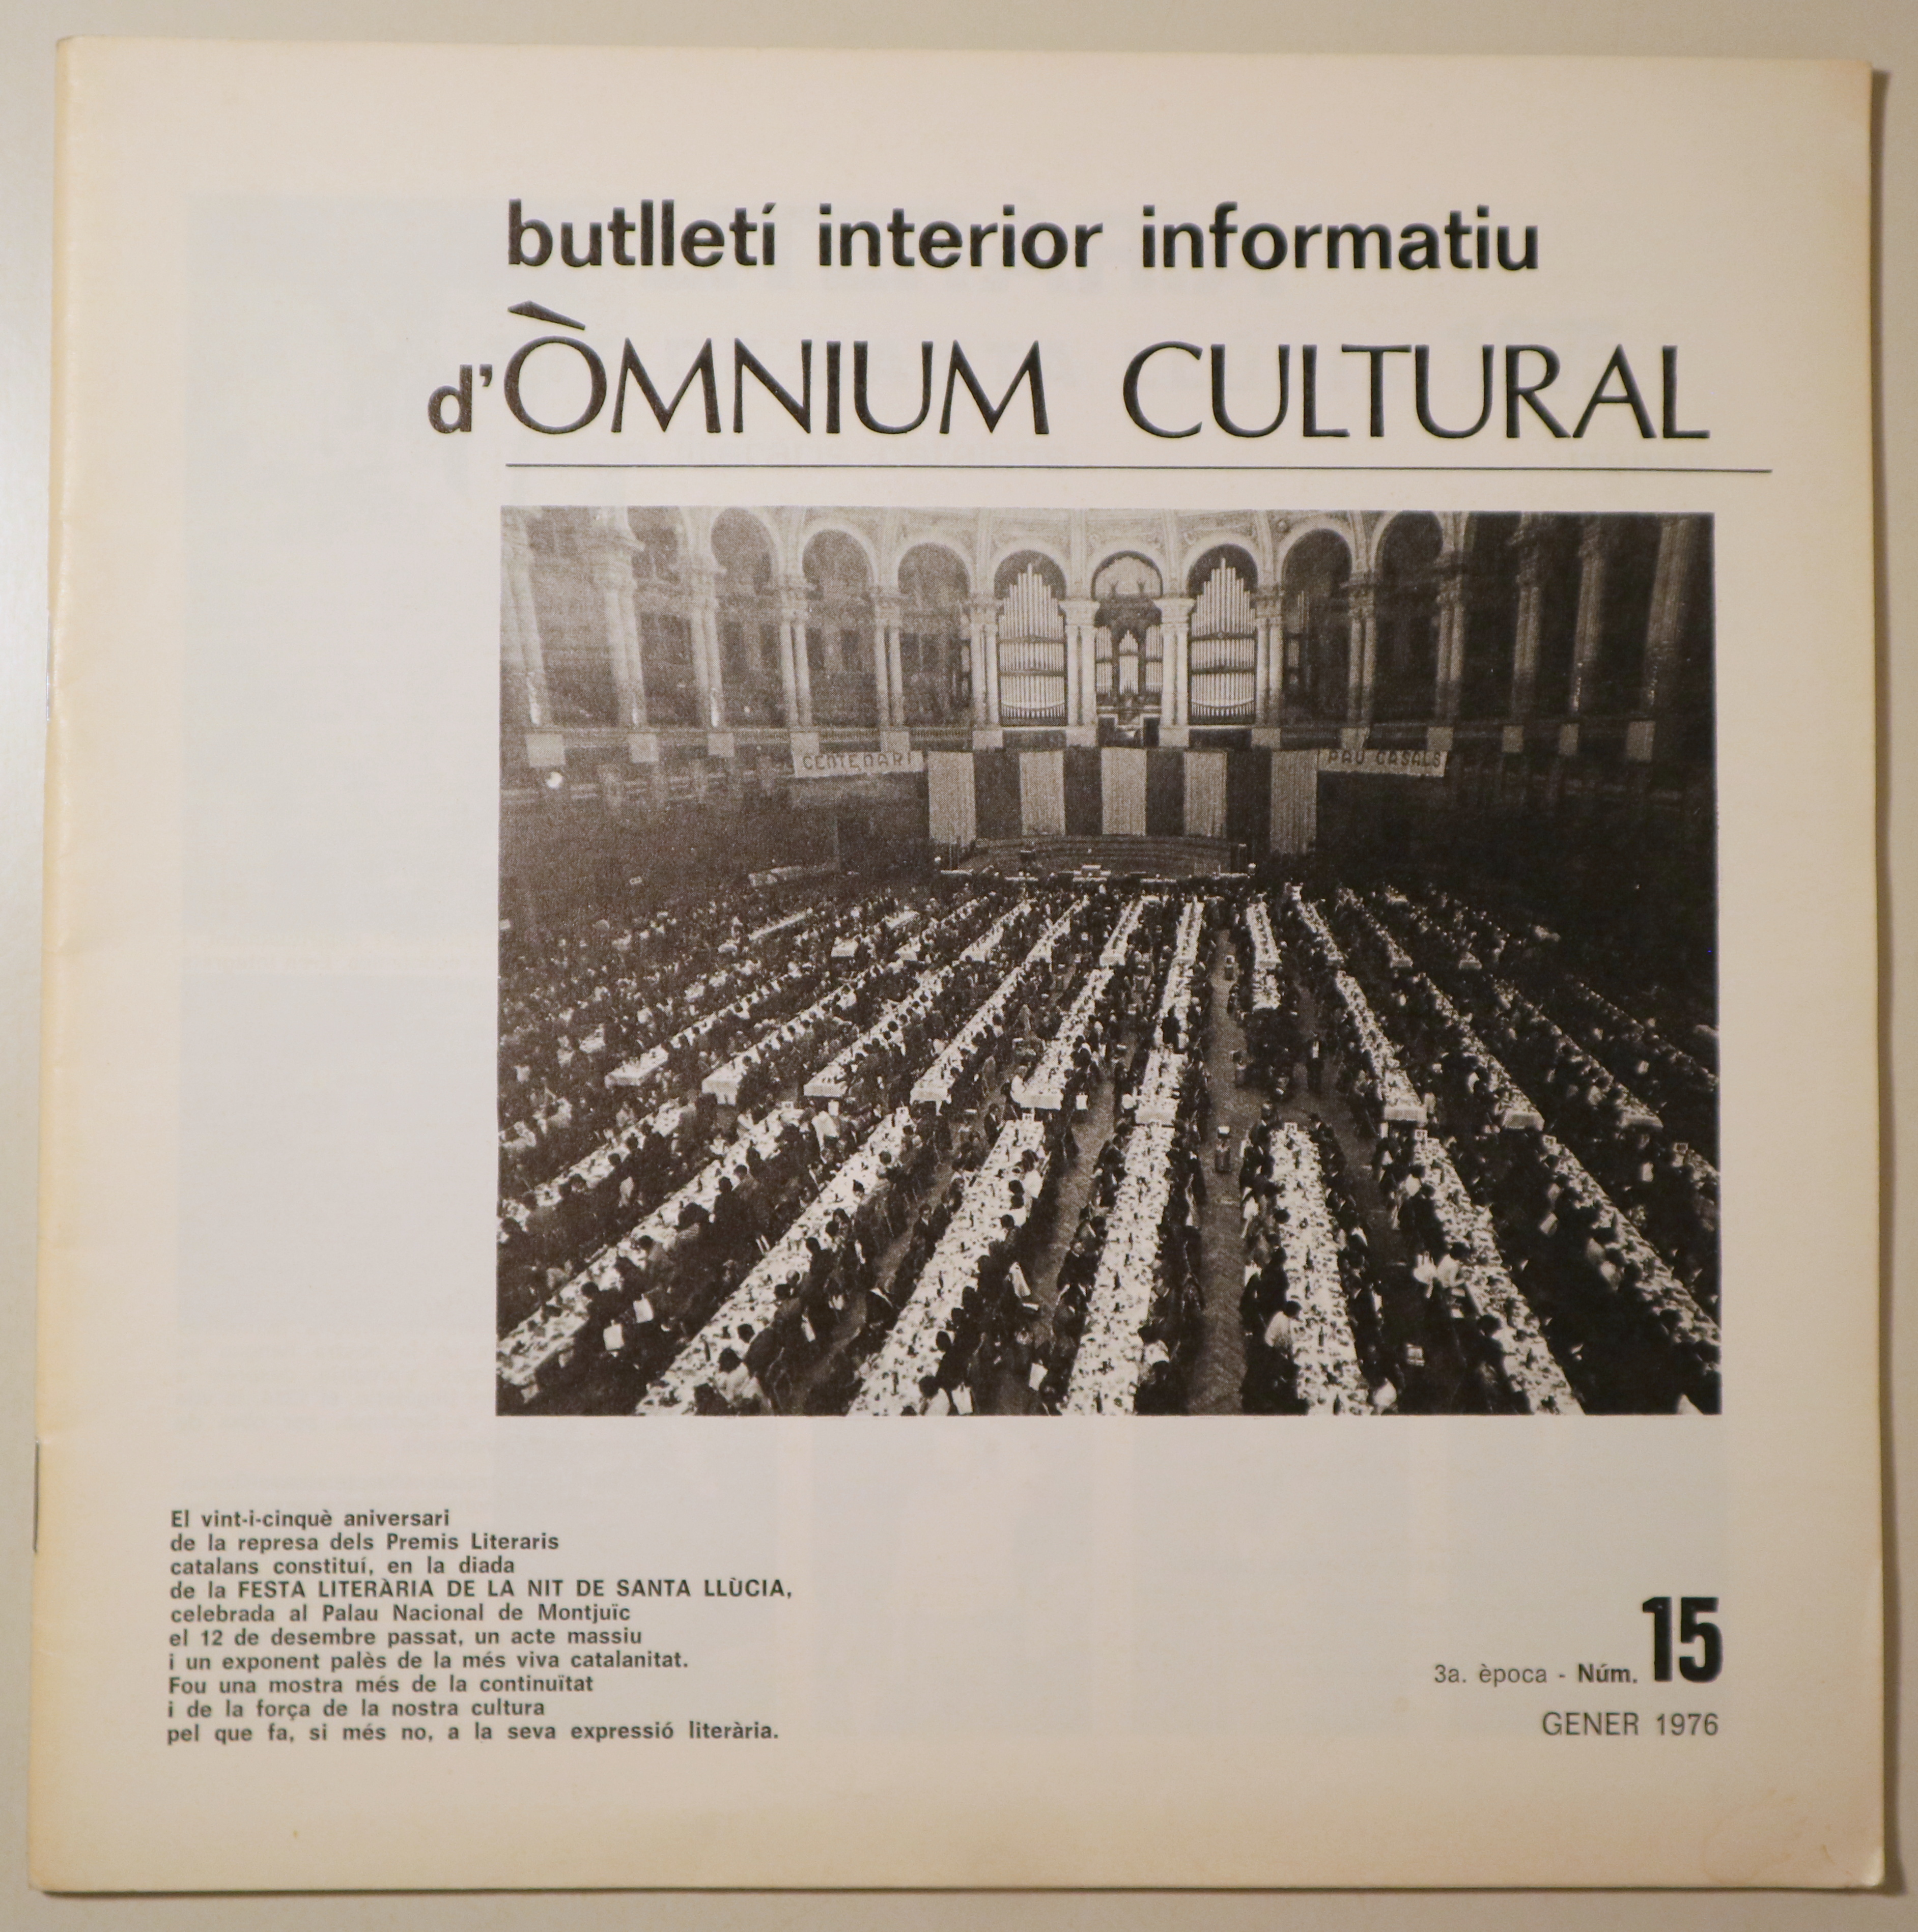 BUTLLETÍ INTERIOR INFORMATIU D'ÒMNIUM CULTURAL 3ª època, núm. 15. Gener 1976 - Barcelona 1976 - Il·lustrat